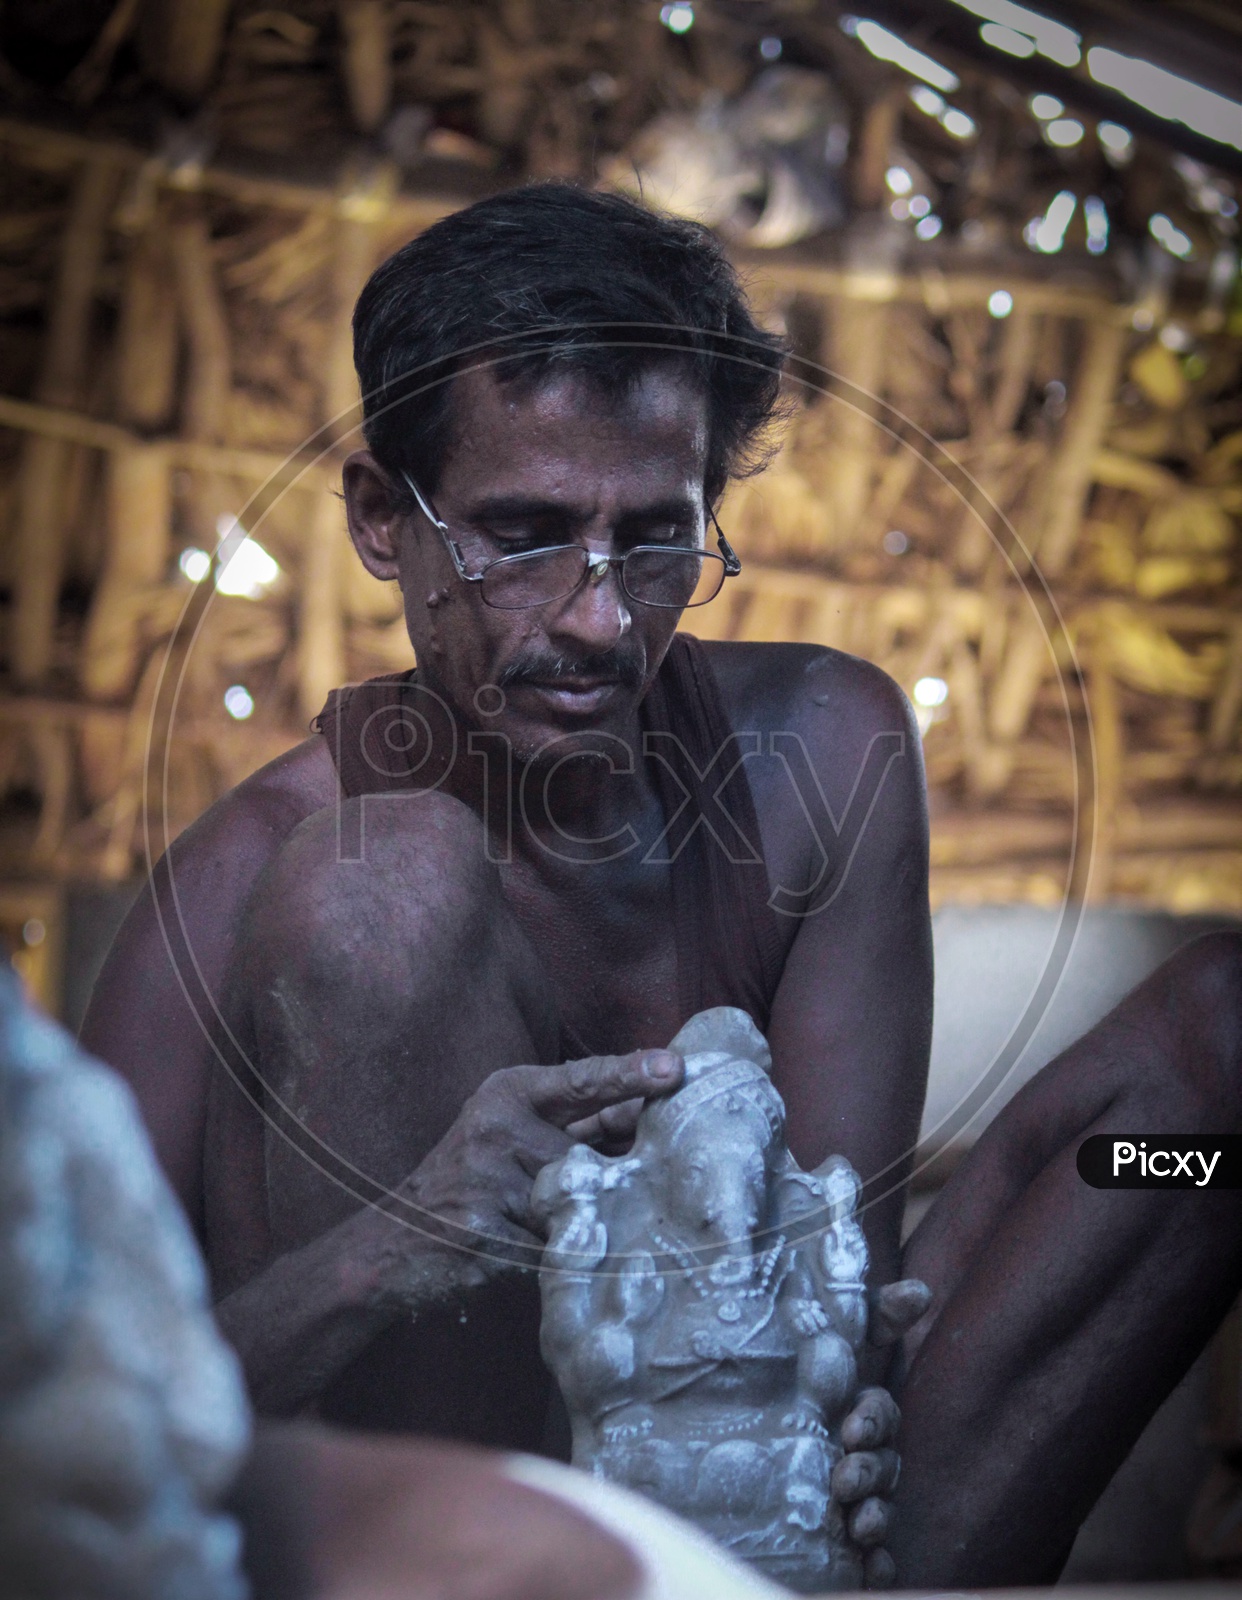 Man in making ganesh idol.